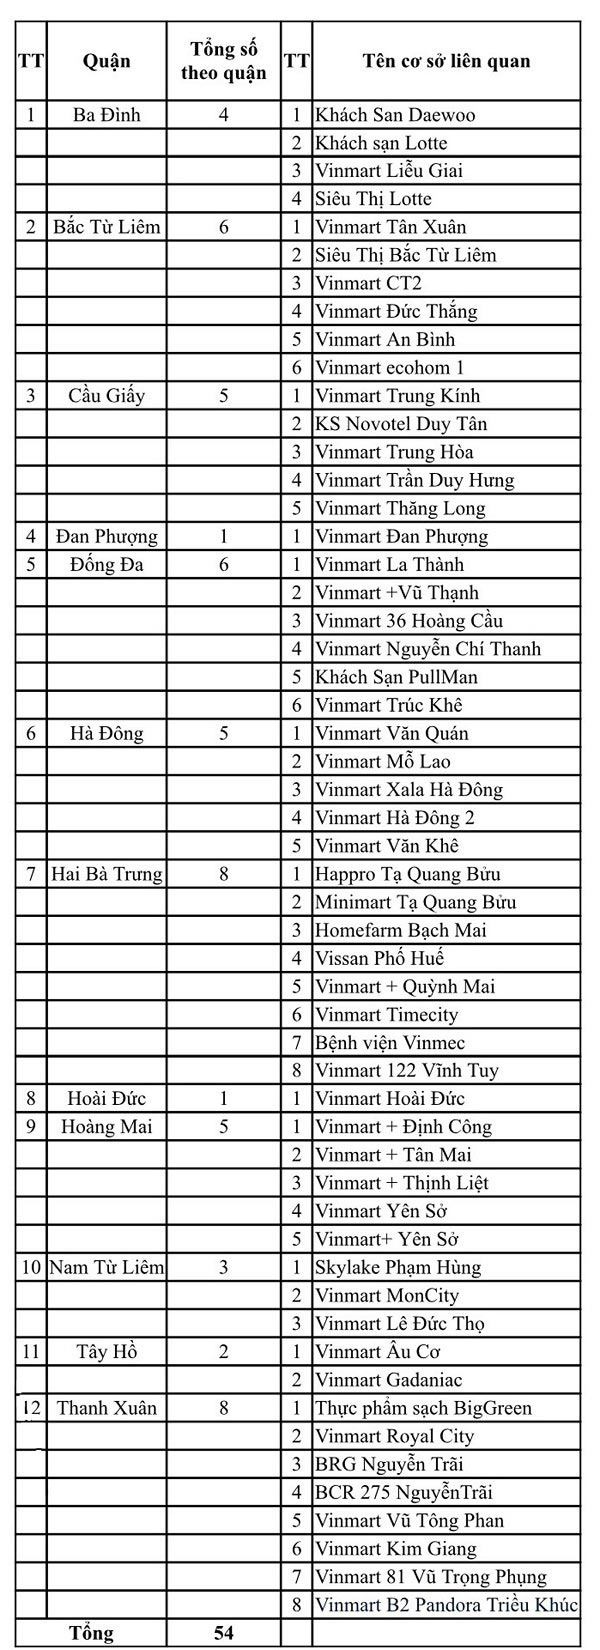 54 siêu thị, bệnh viện, khách sạn tại Hà Nội liên quan đến ...